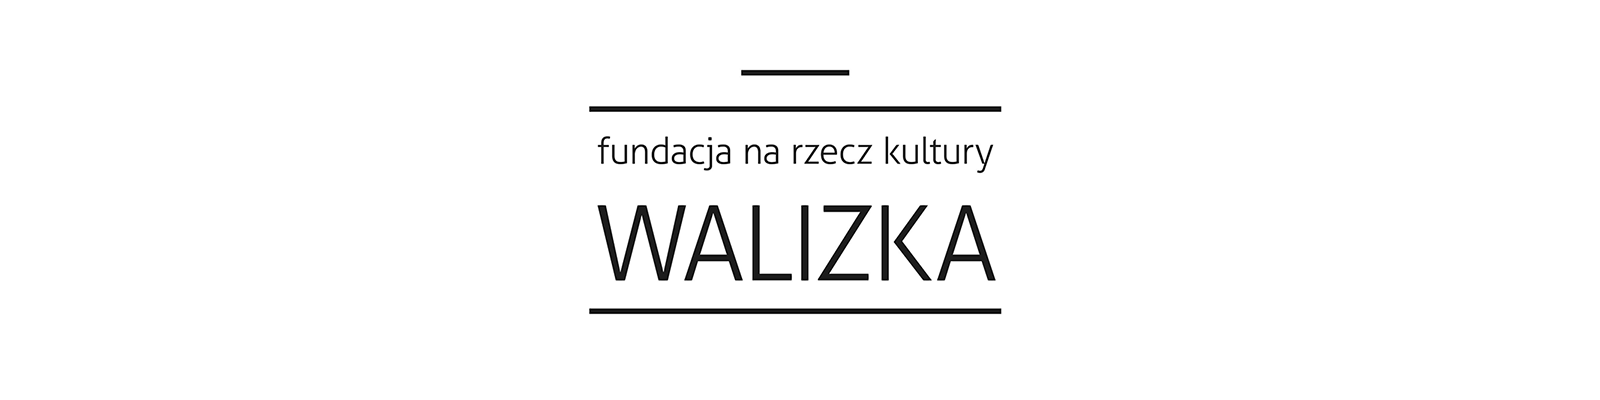 Fundacja na Rzecz Kultury "WALIZKA"